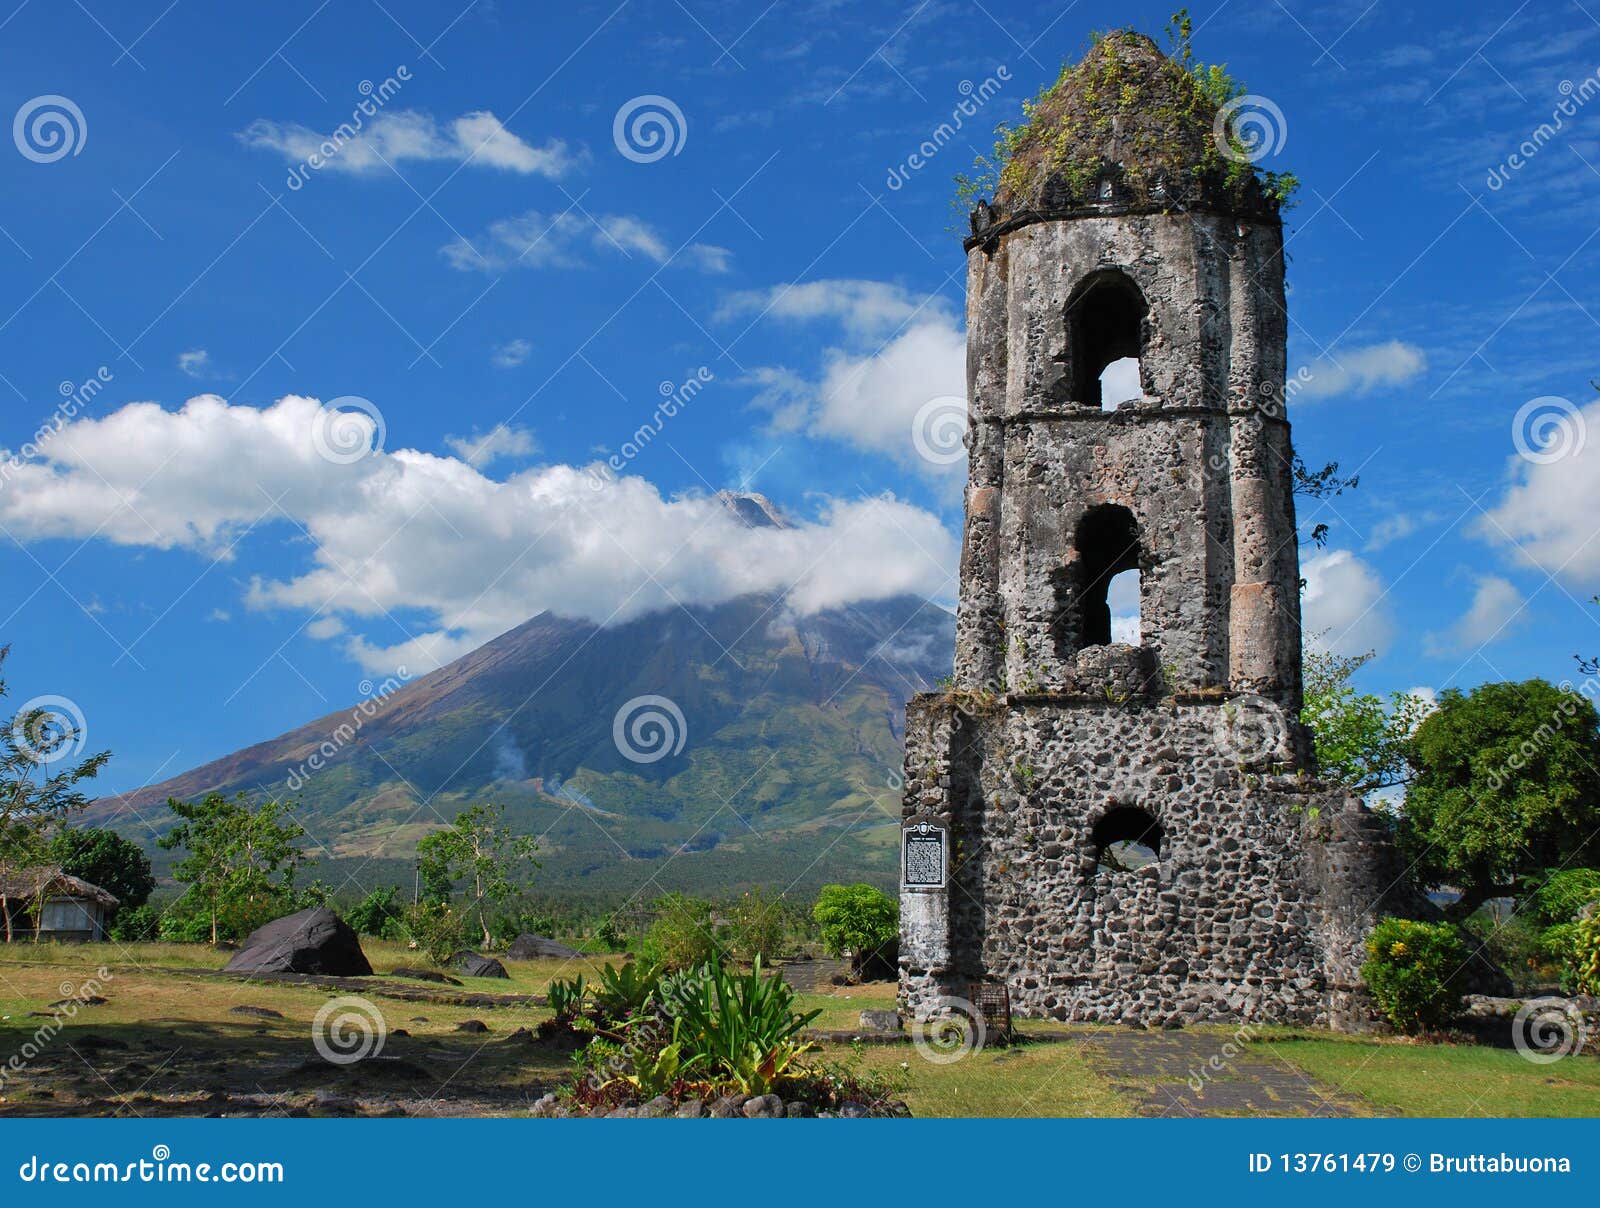 Cagsawa Church And Mayon Volcano Royalty Free Stock Images - Image ...